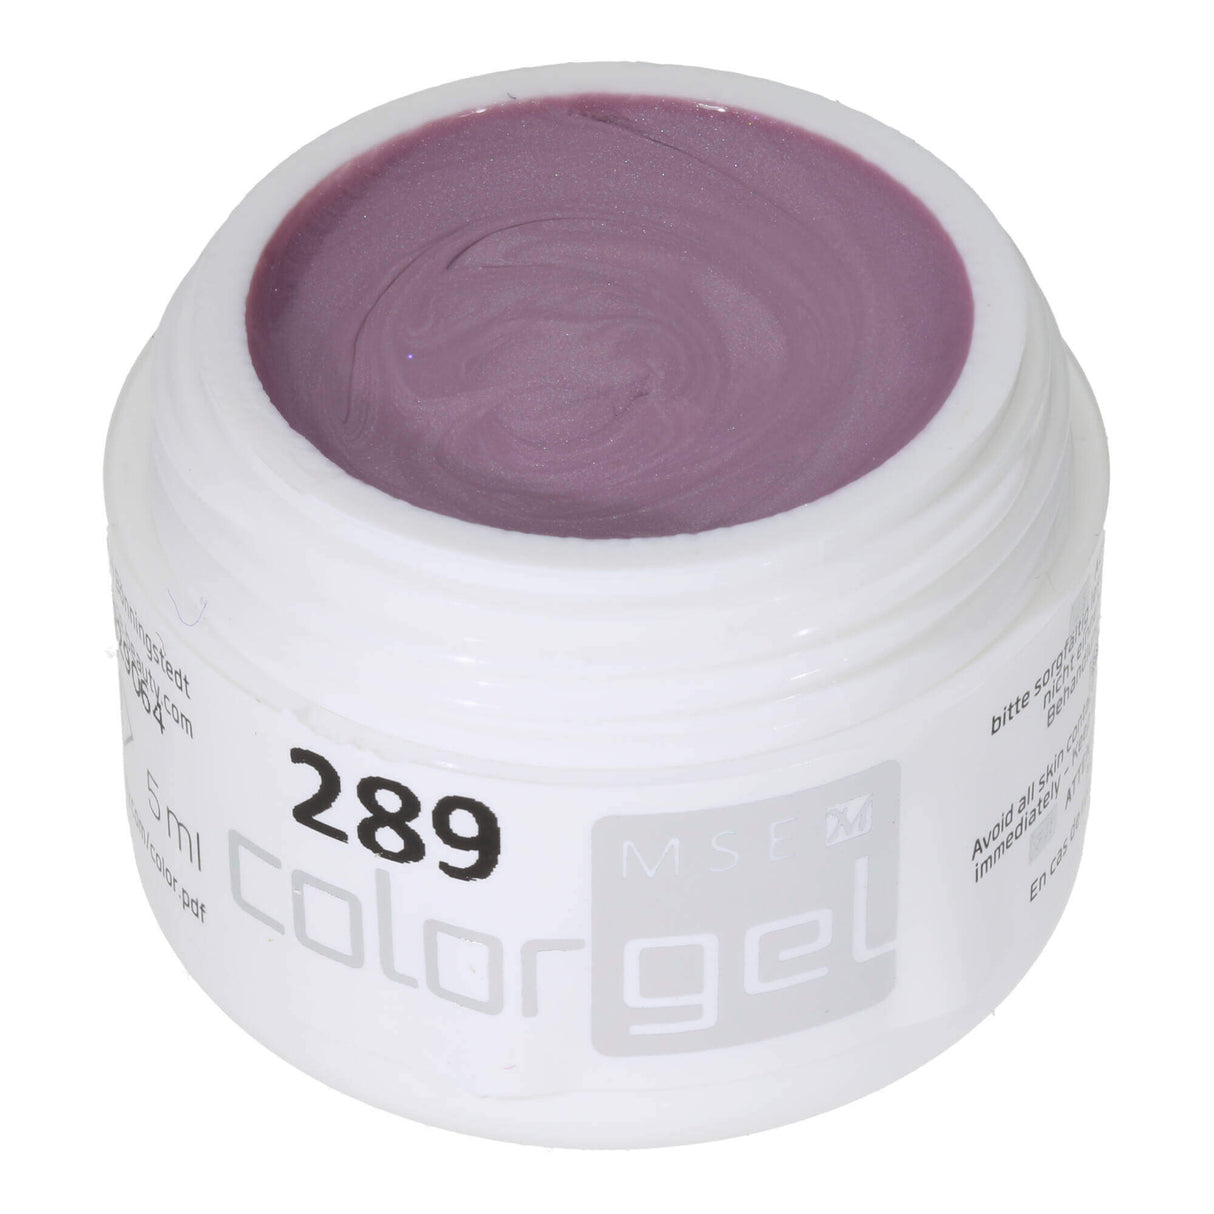 # 289 Premium EFFECT Color Gel 5ml Màu hồng xám tinh tế với ánh sáng lung linh huyền ảo